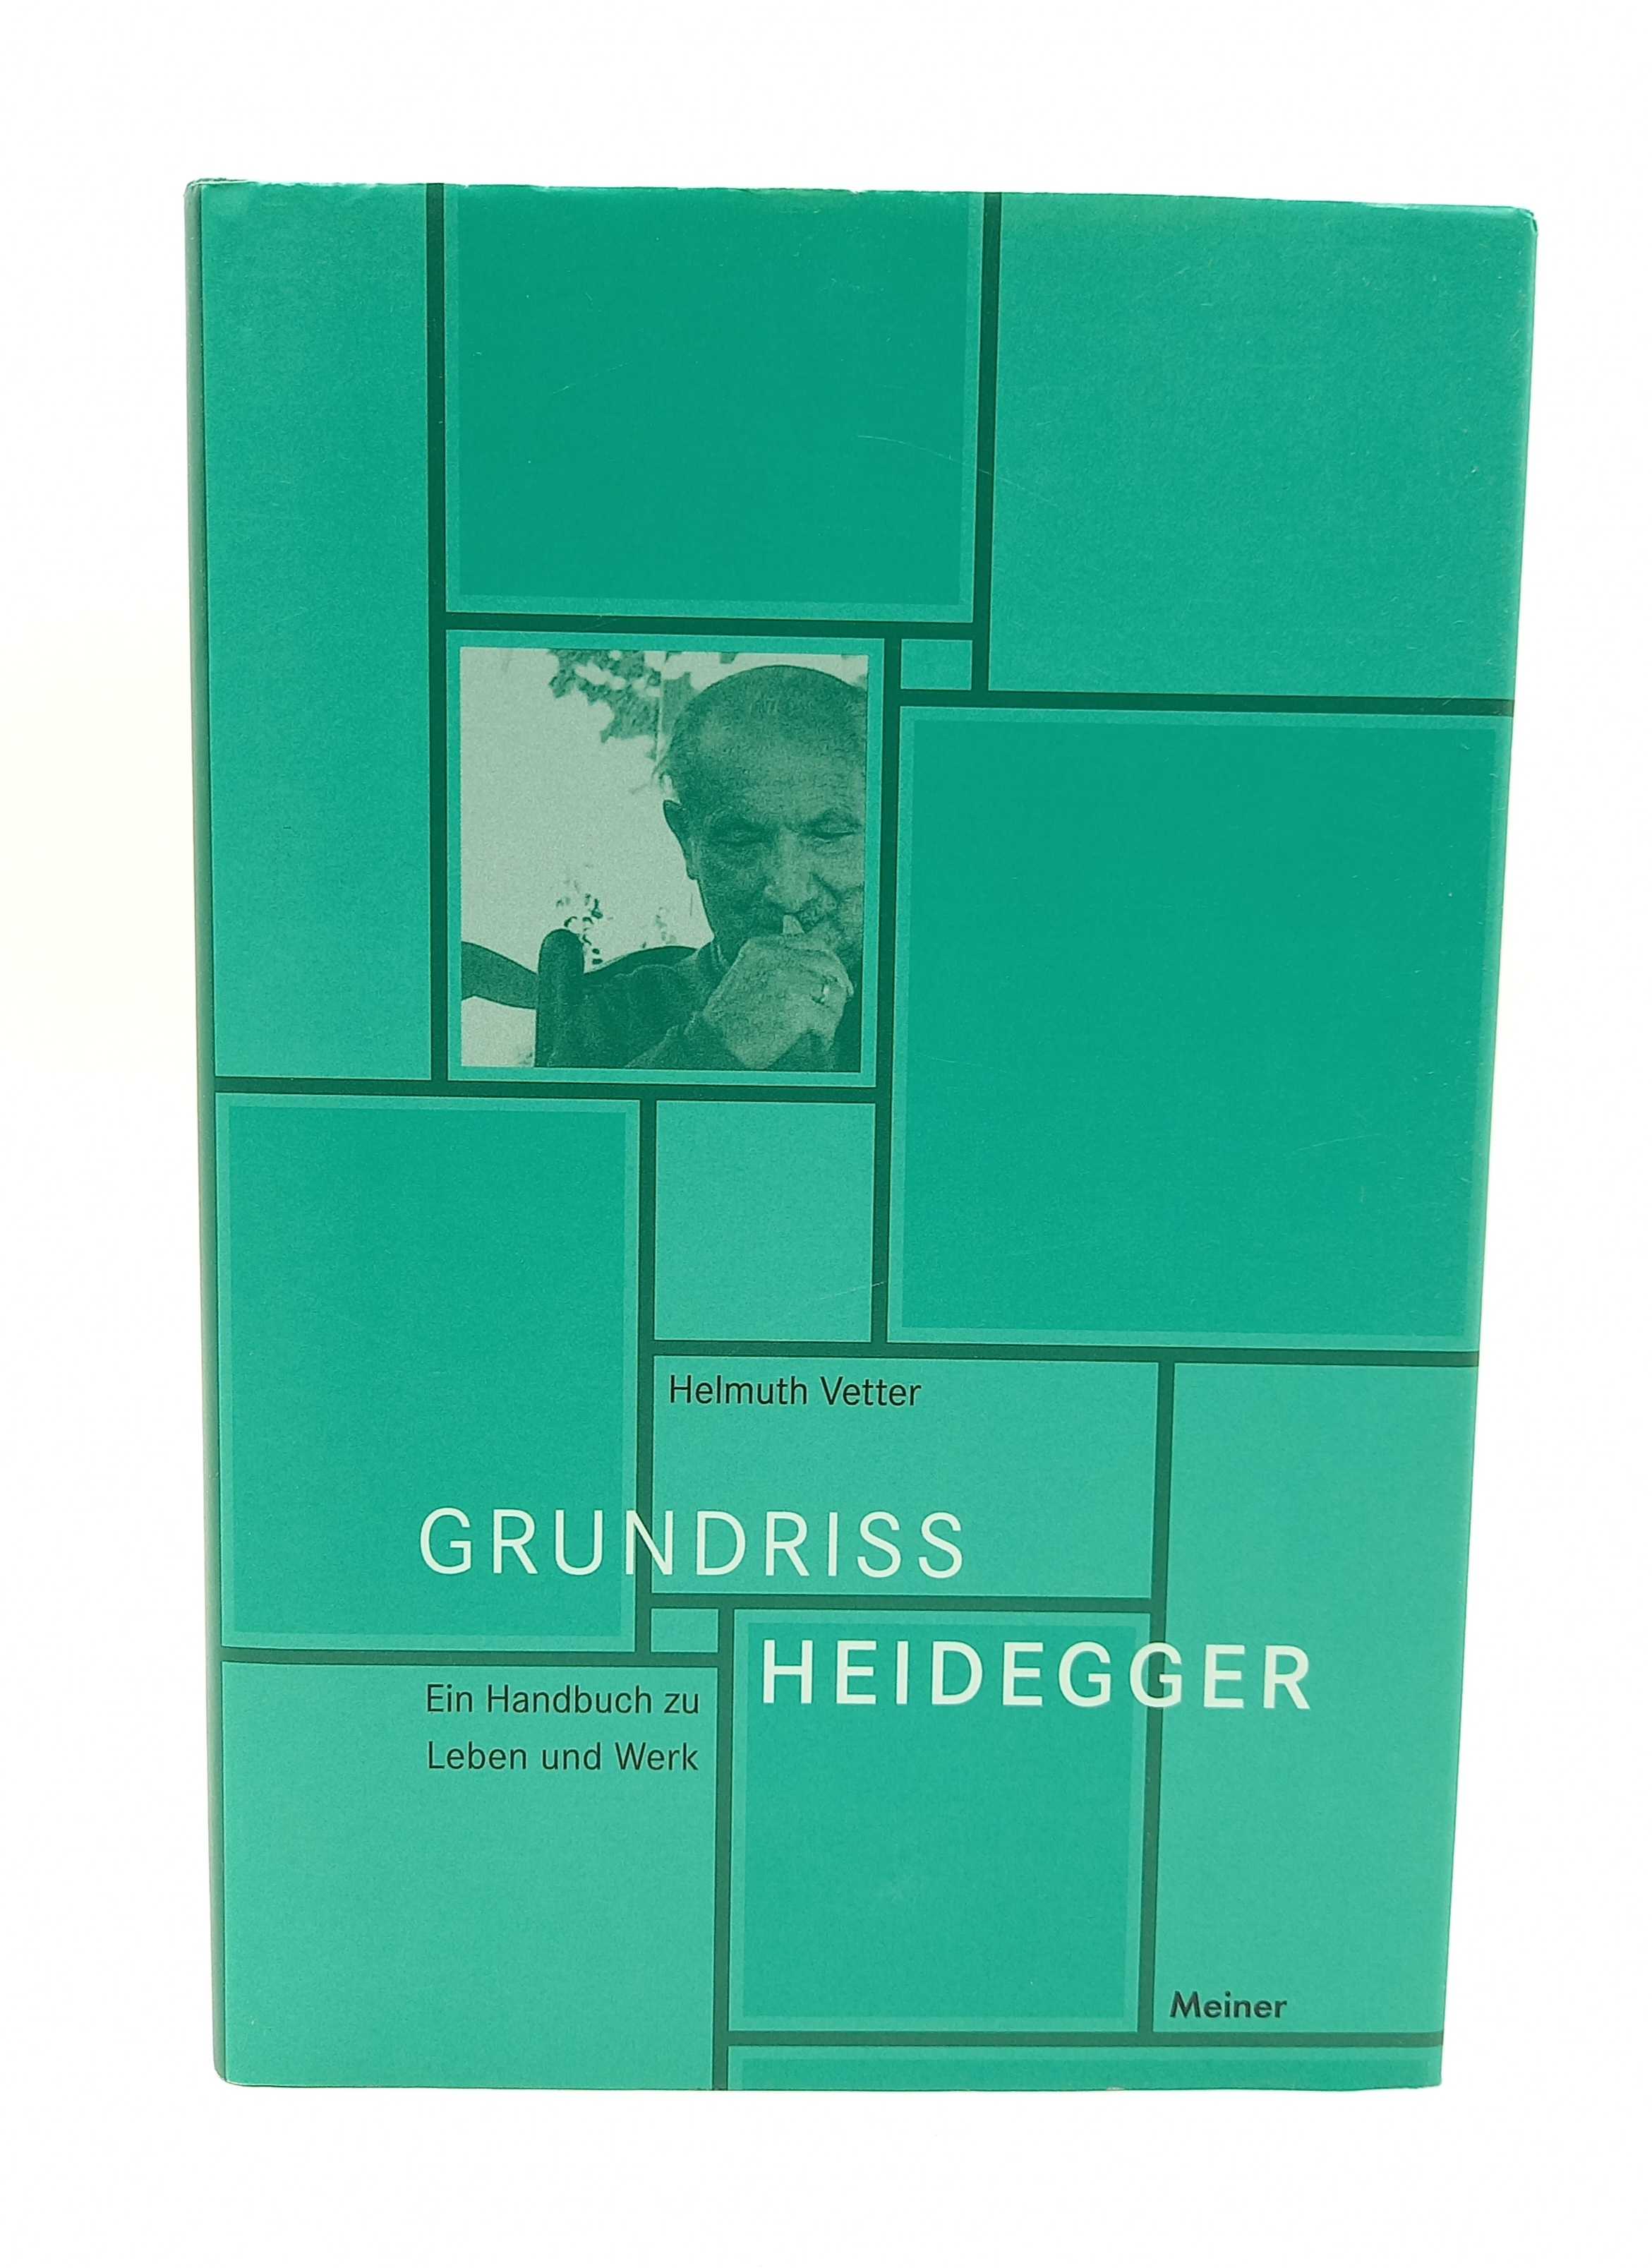 Grundriss Heidegger Ein Handbuch zu Leben und Werk - Vetter, Helmuth -